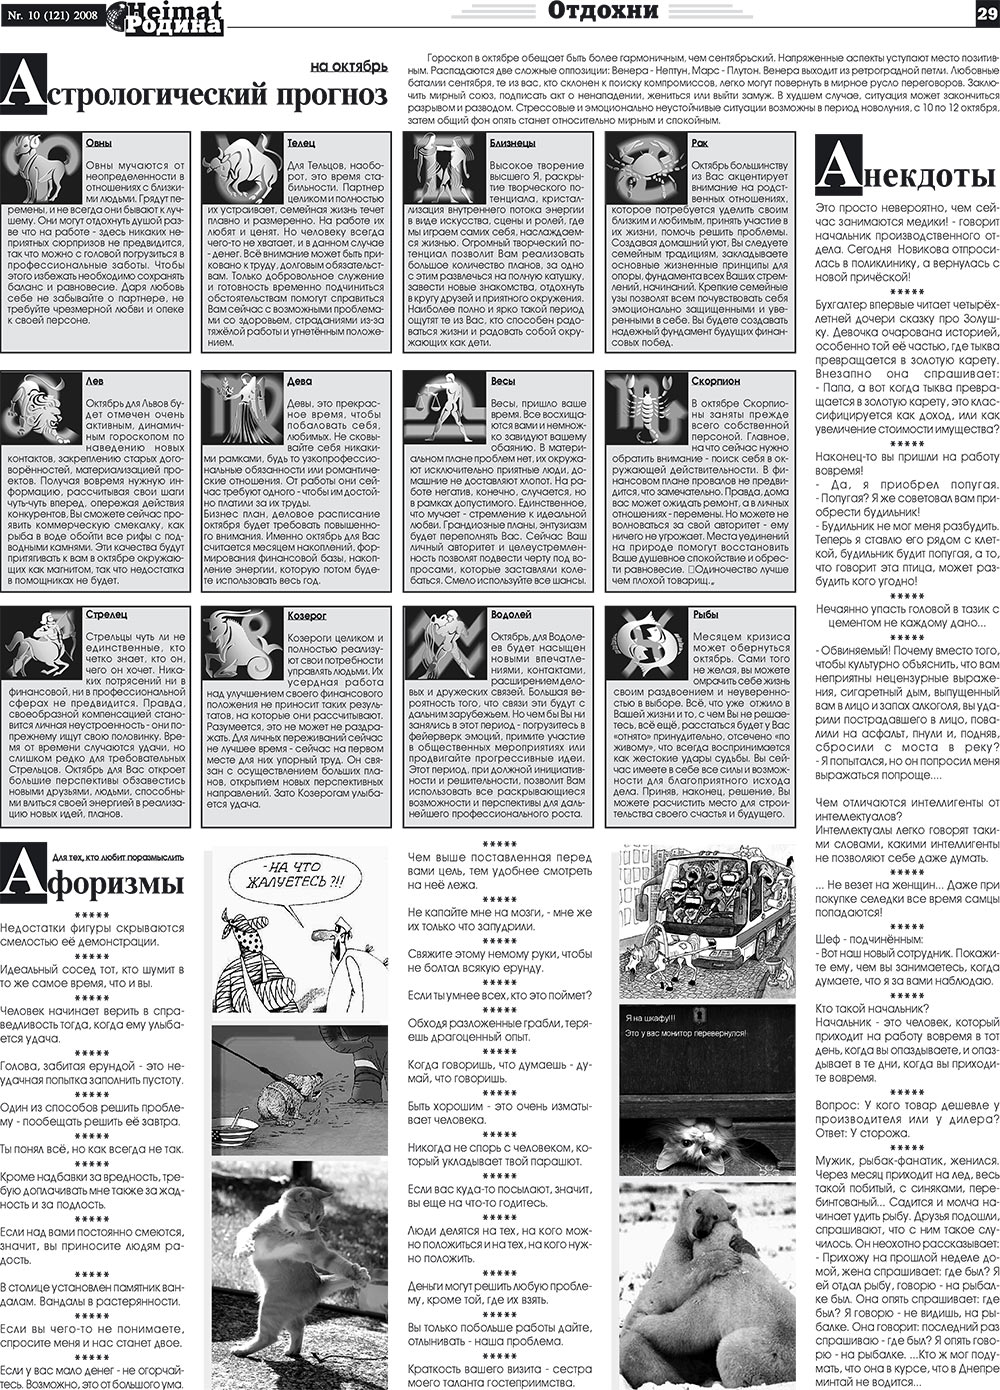 Heimat-Родина (газета). 2008 год, номер 10, стр. 29